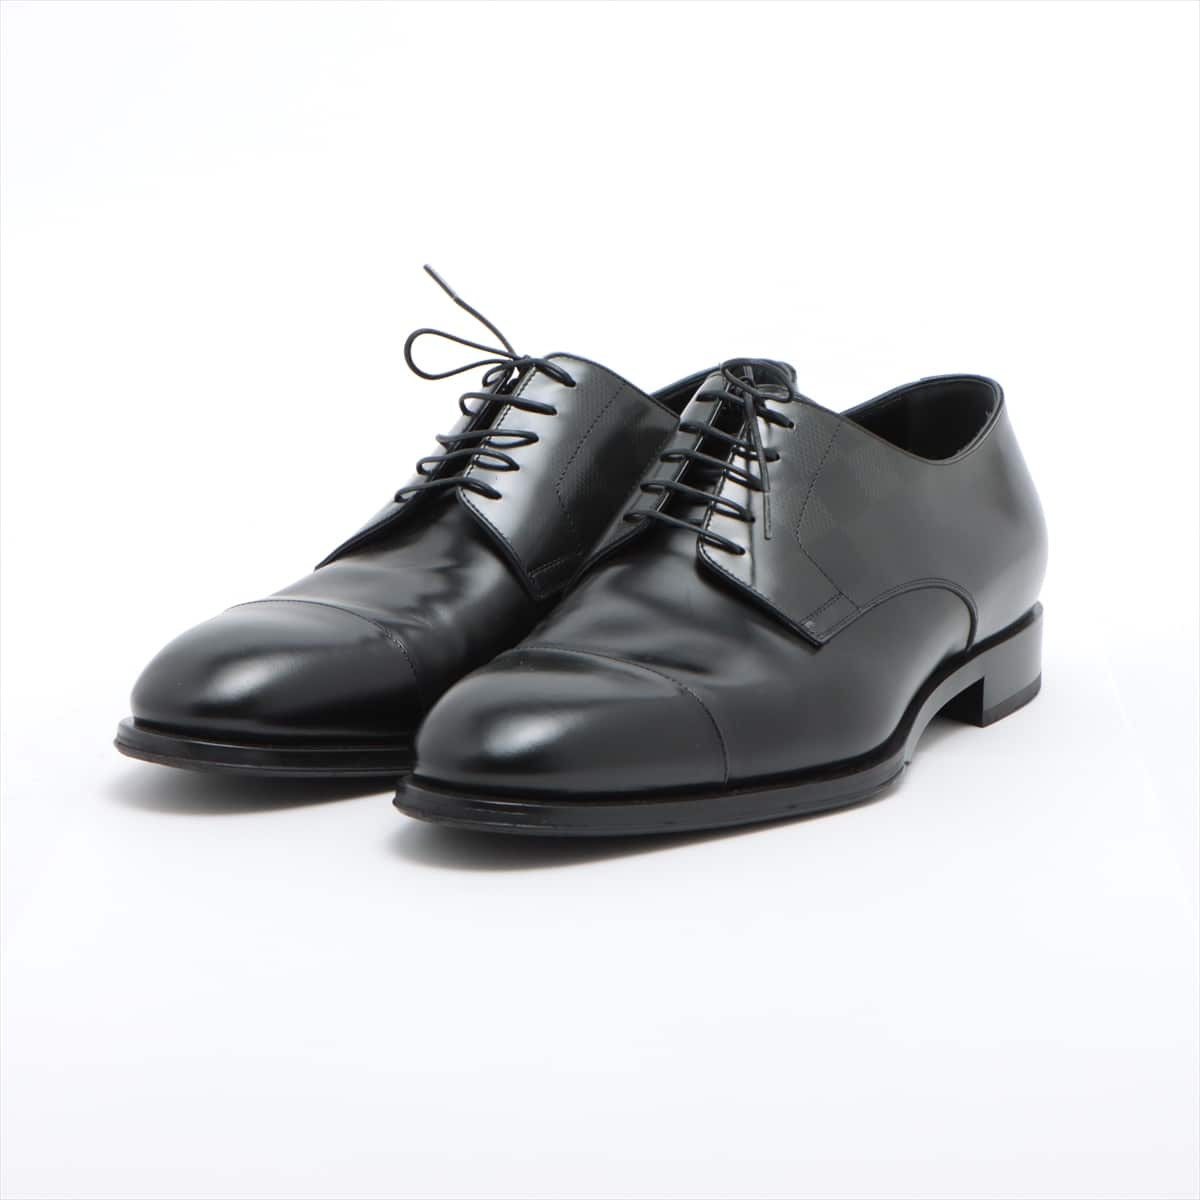 Louis Vuitton 19-year Leather Dress shoes 7 1/2 Men's Black DI0199 Damier